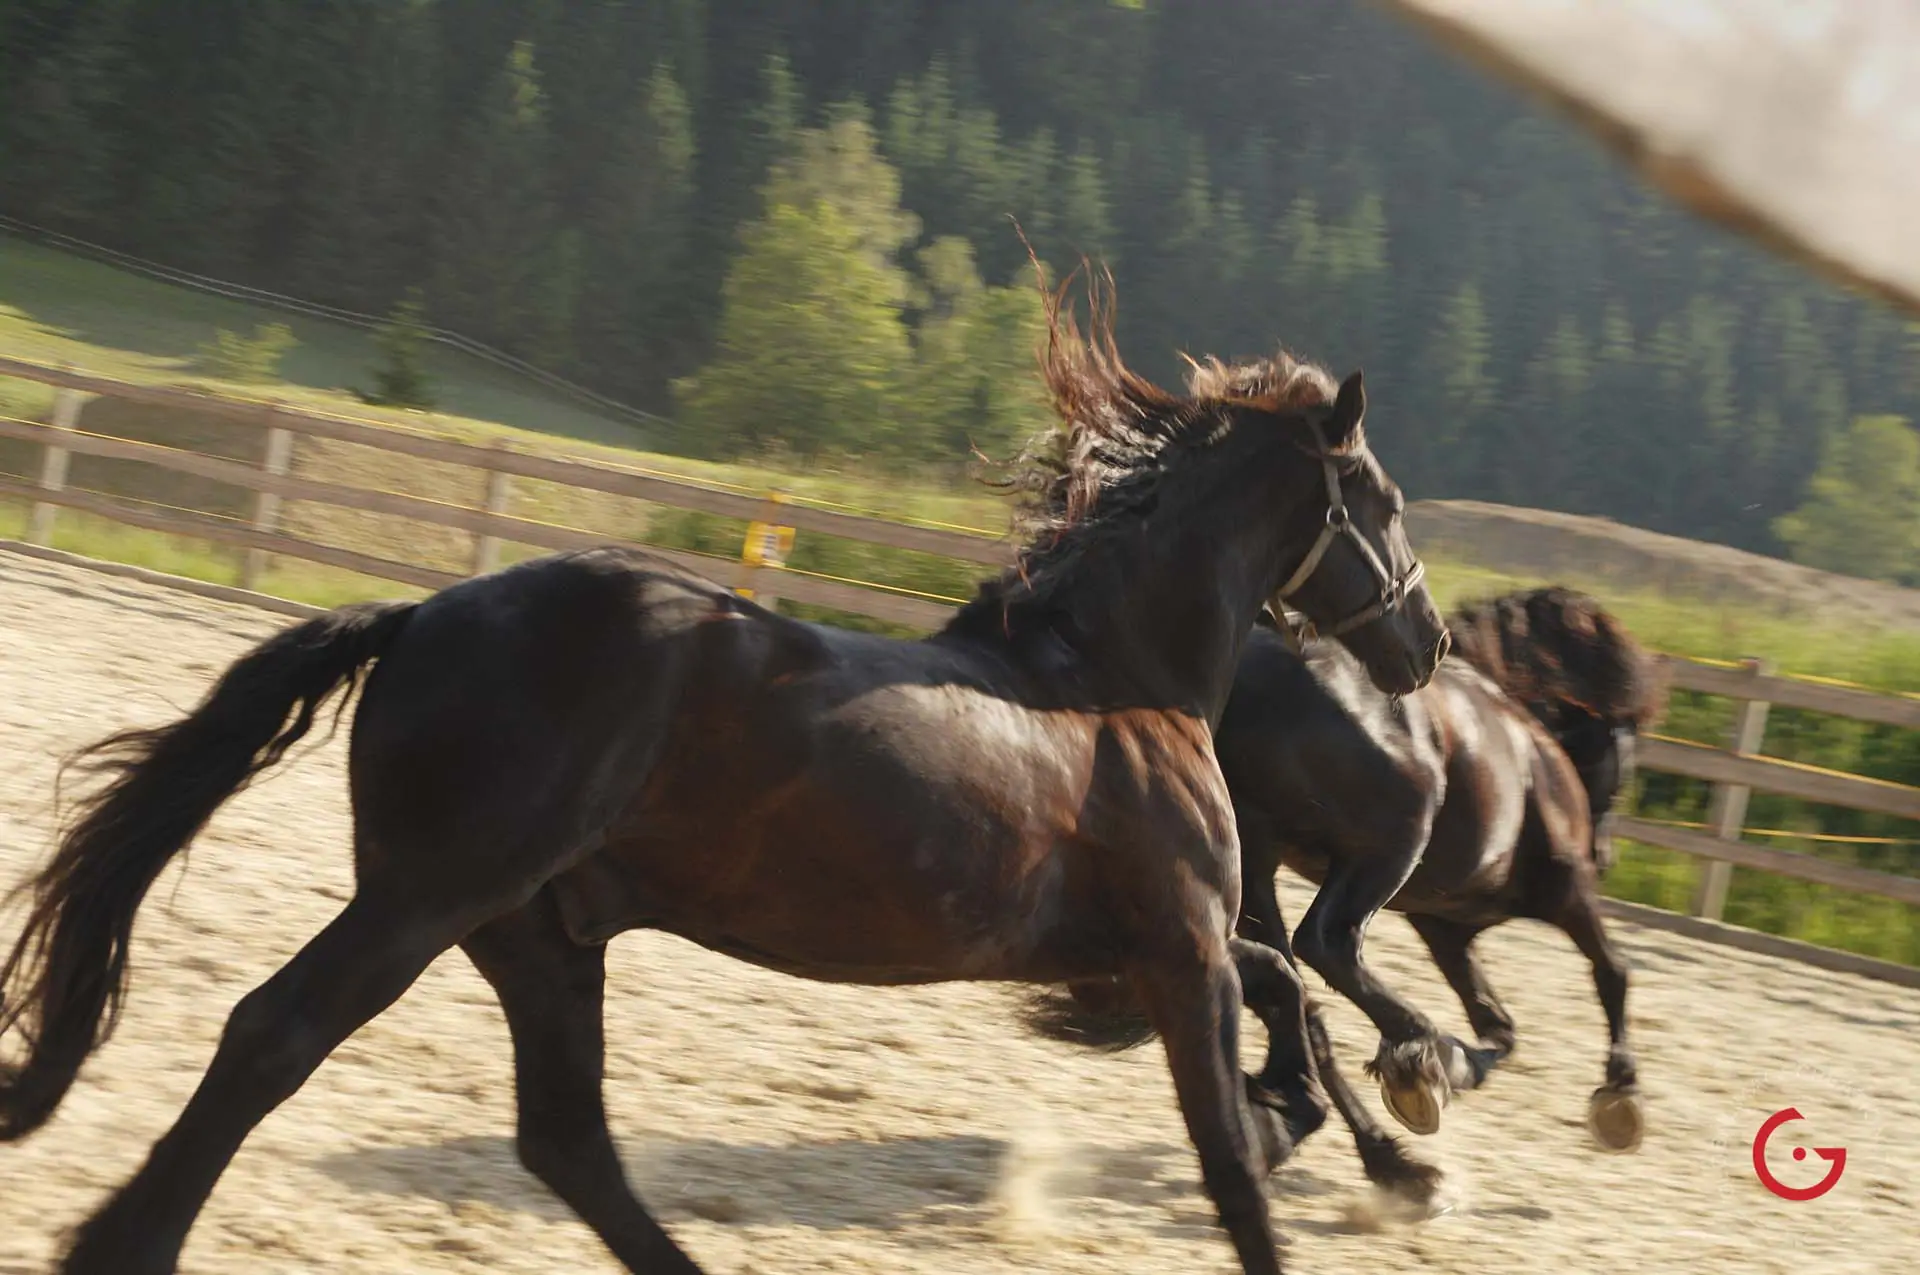 Running Horses in Swiss Monastery - Travel Photographer and Switzerland Photography